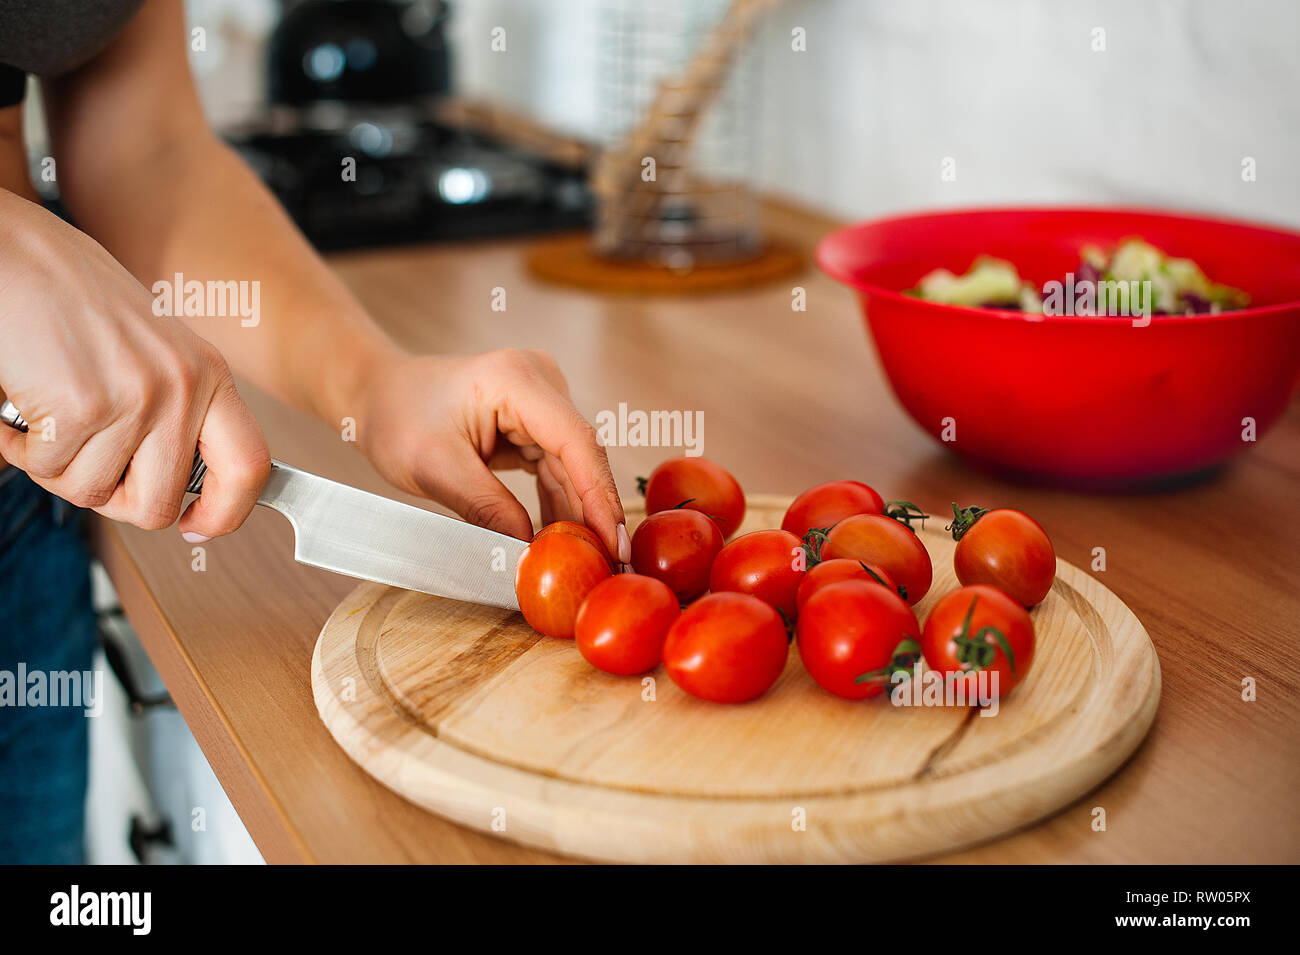 La cuisine et accueil concept - close up main de femme de tomate de coupe sur une planche à découper avec couteau Banque D'Images